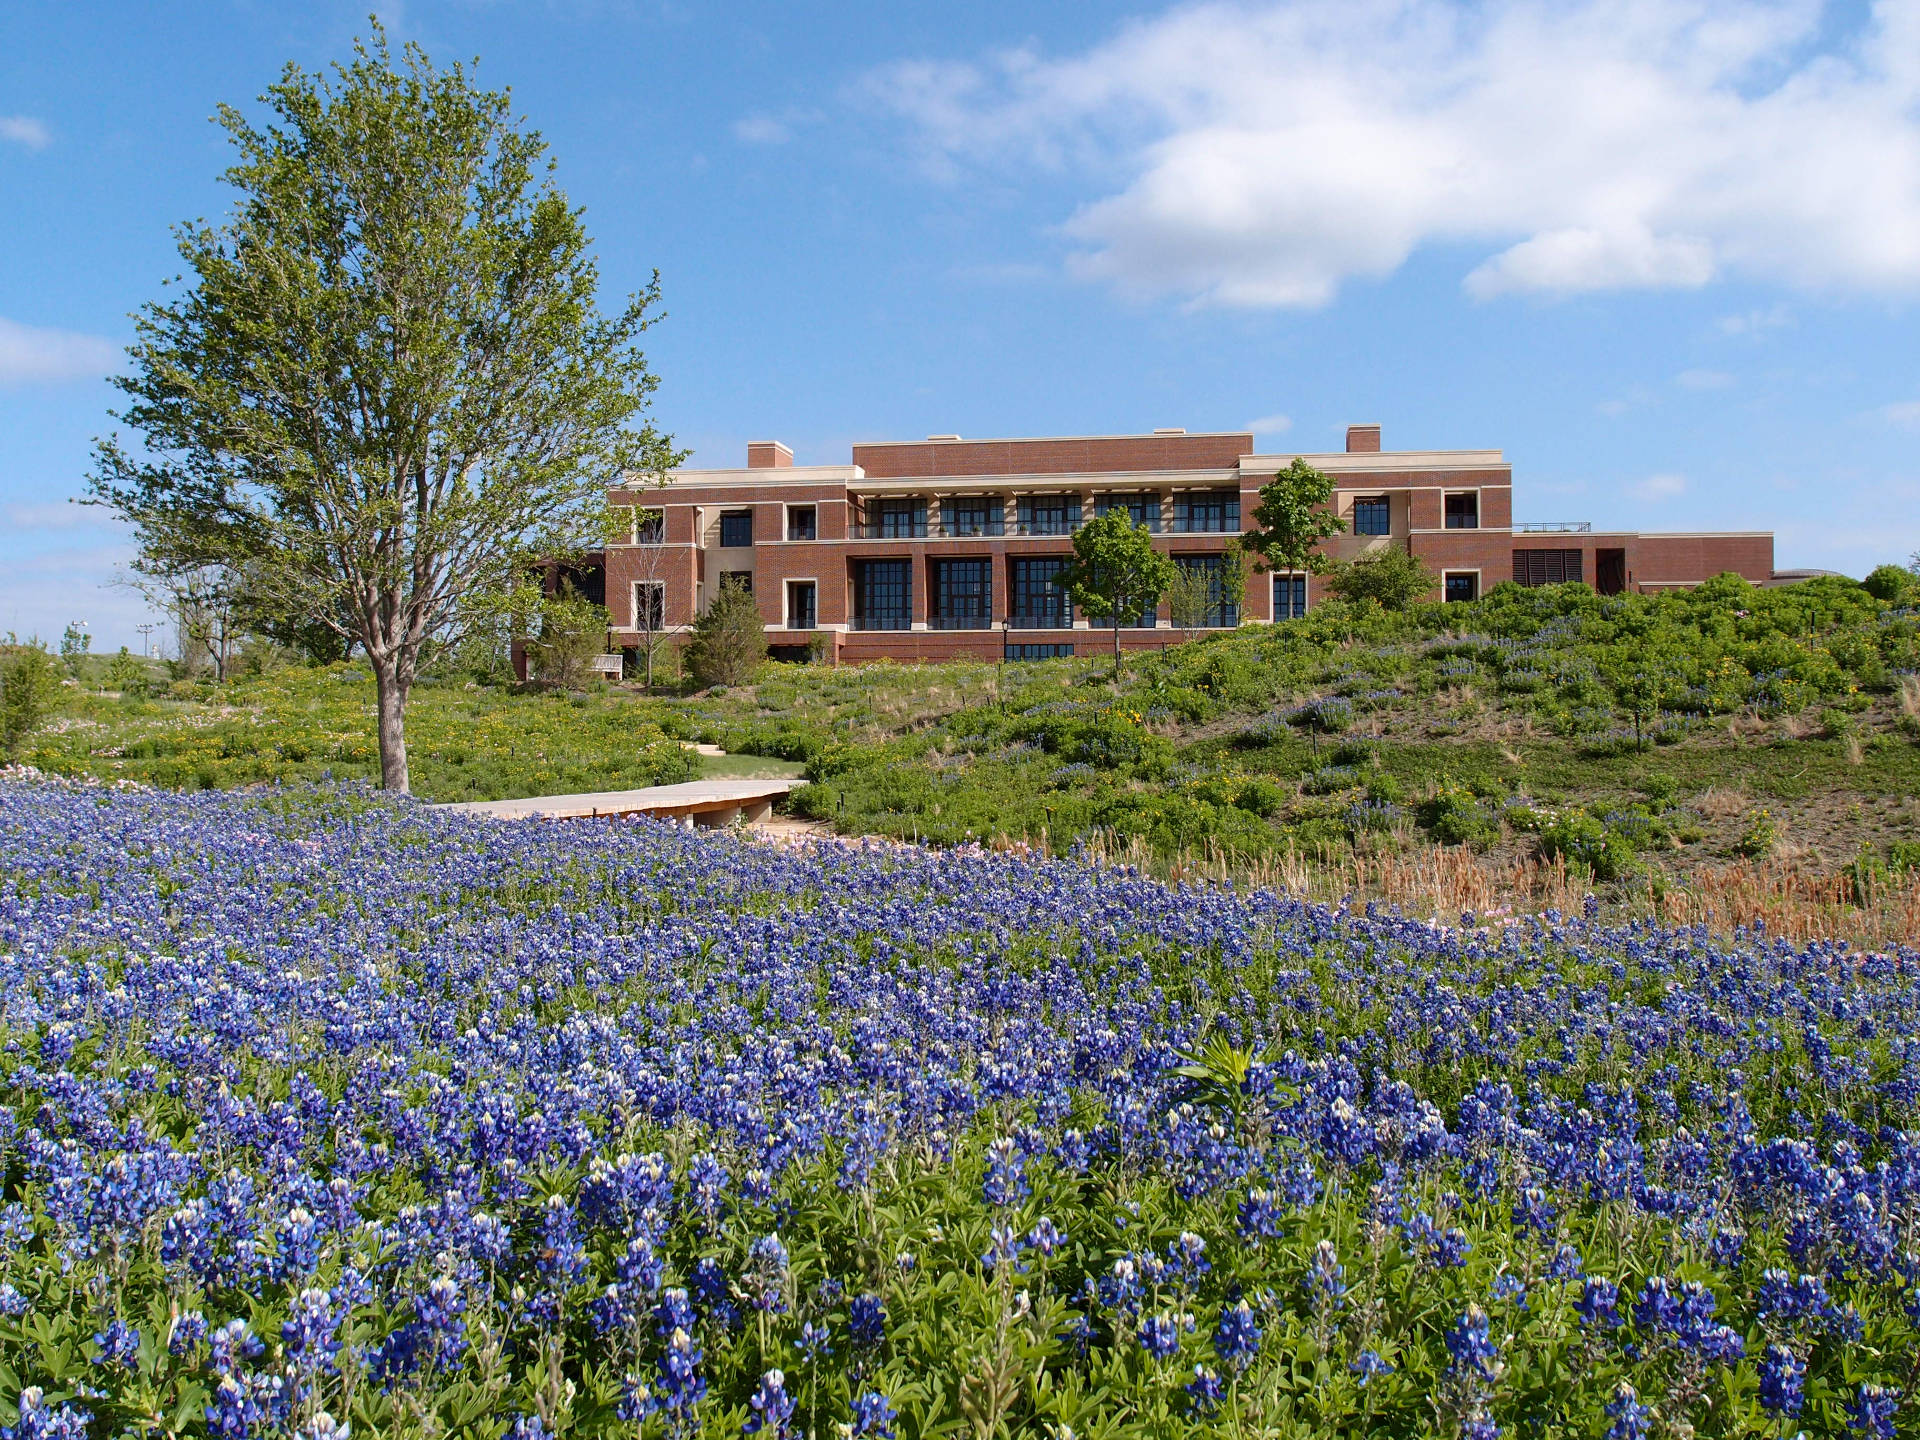 Landscape Design of the George W. Bush Presidential Center in Dallas, Texas